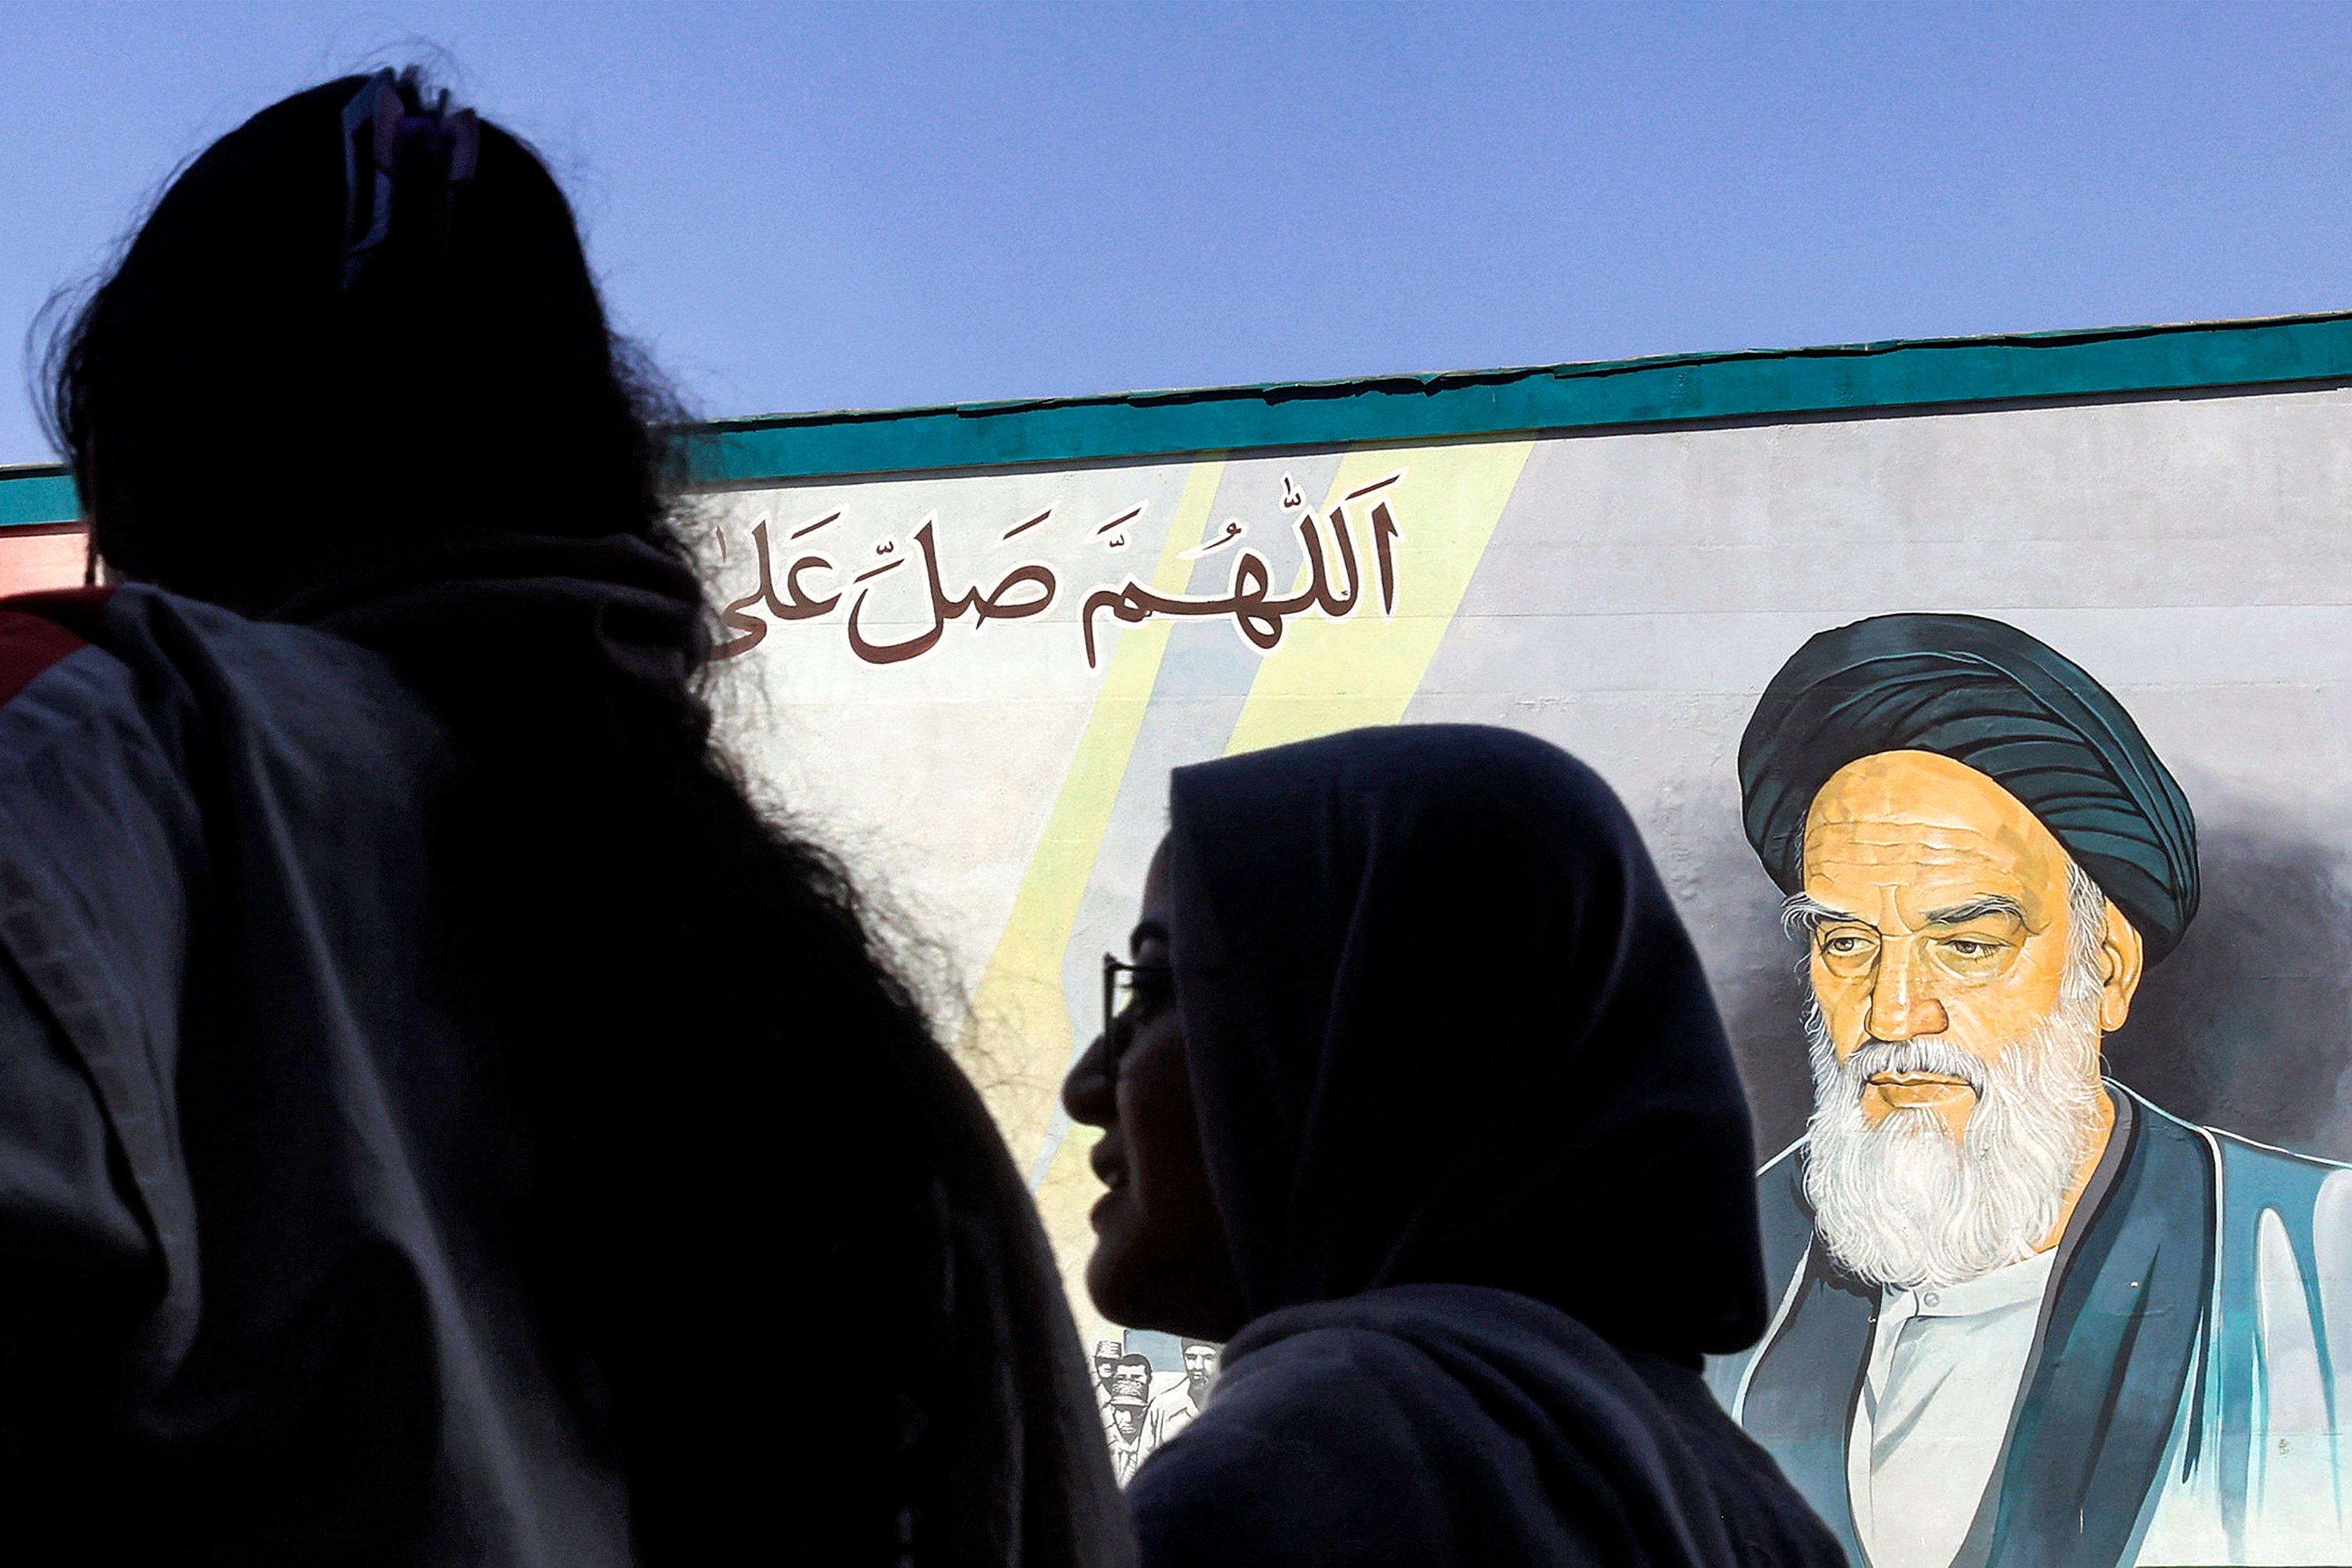 kobiece głowy, jedna w hidżabie, druga bez, w tle mural z Chomeinim